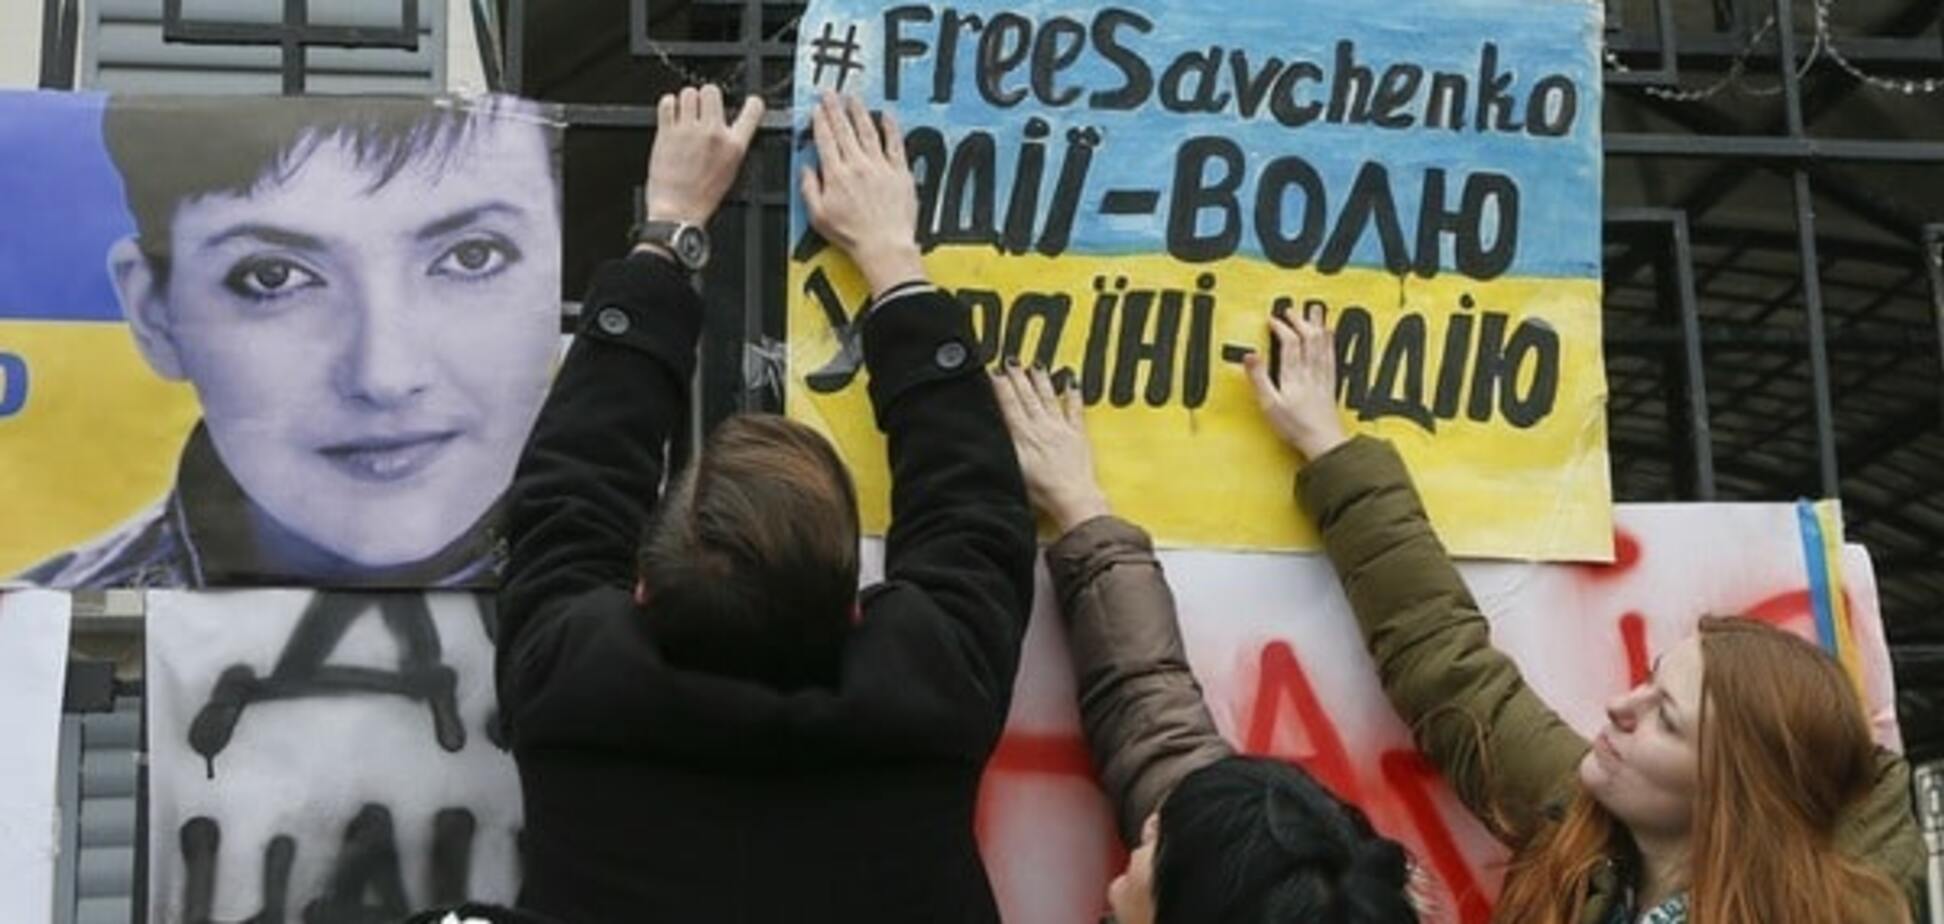 Красиво и изящно: Голышев рассказал о вариантах освобождения Савченко